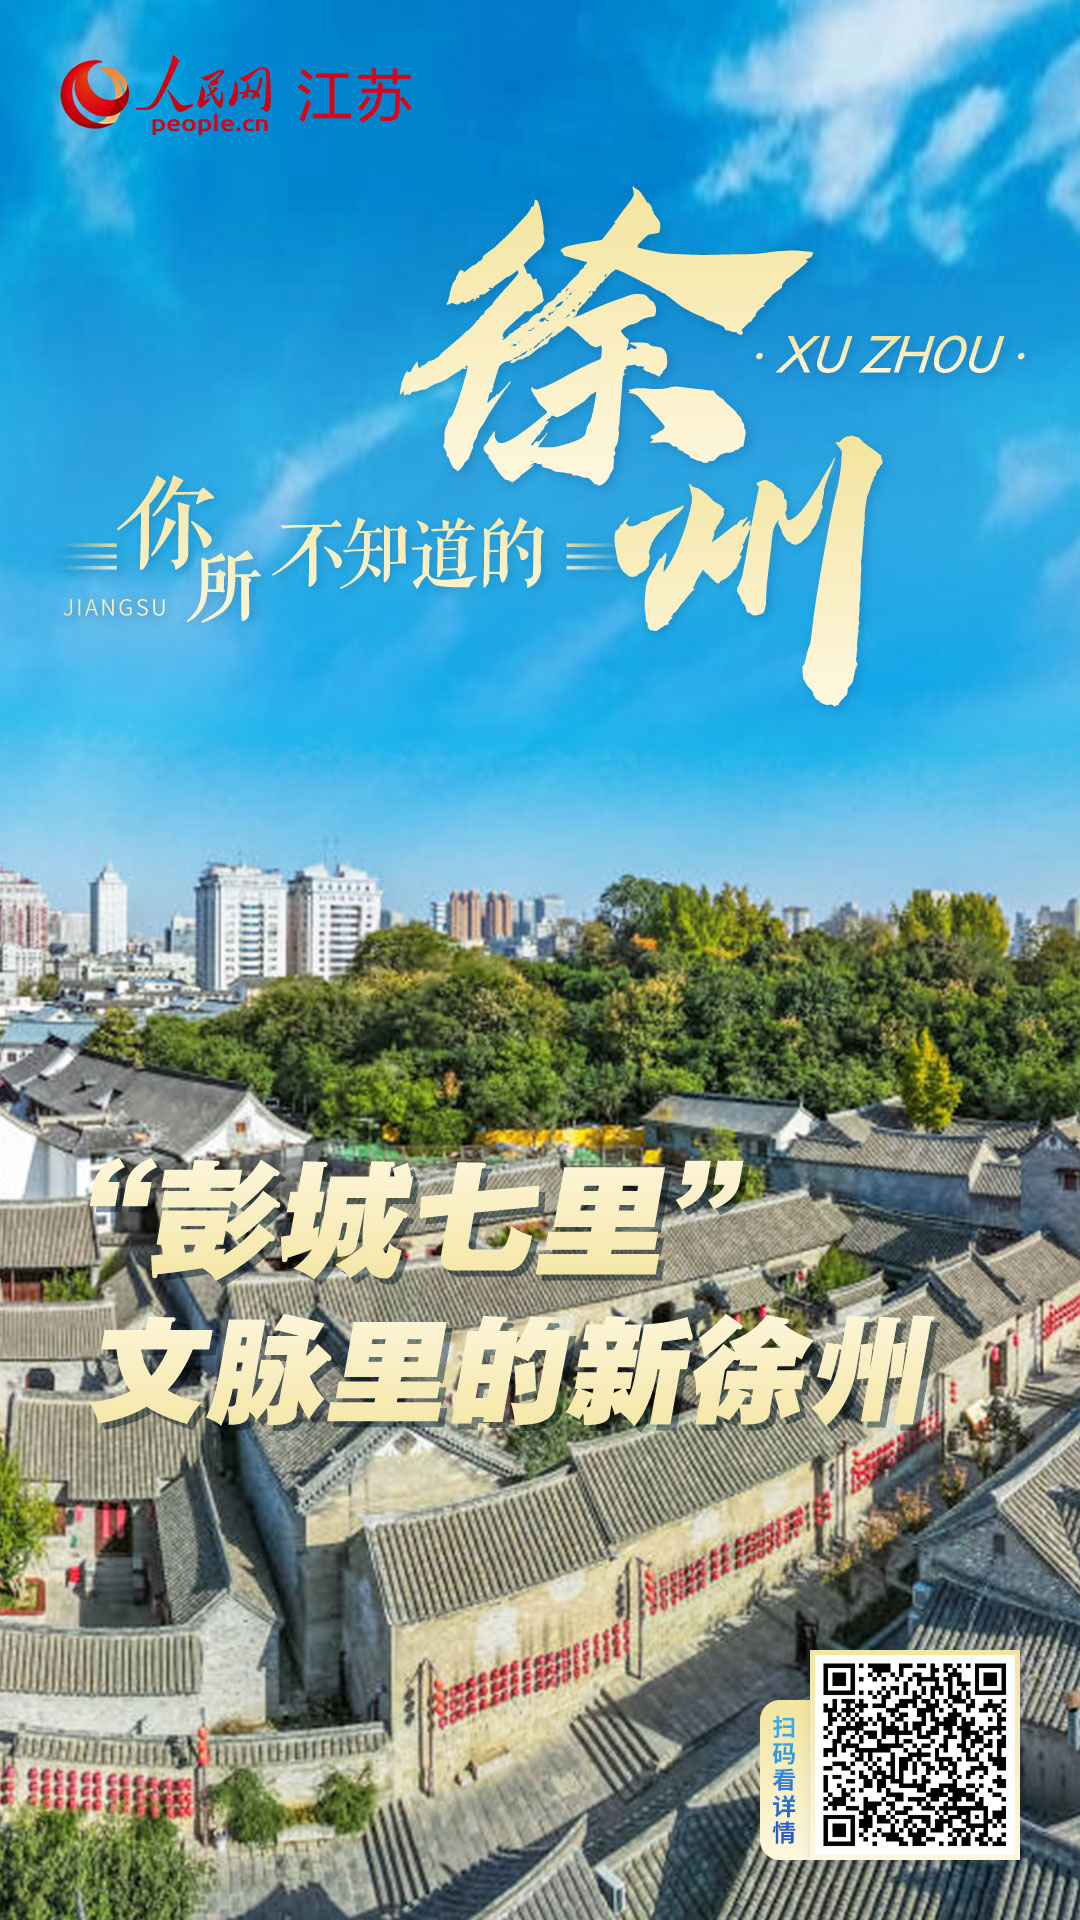  New Xuzhou in Pengcheng Qili Context